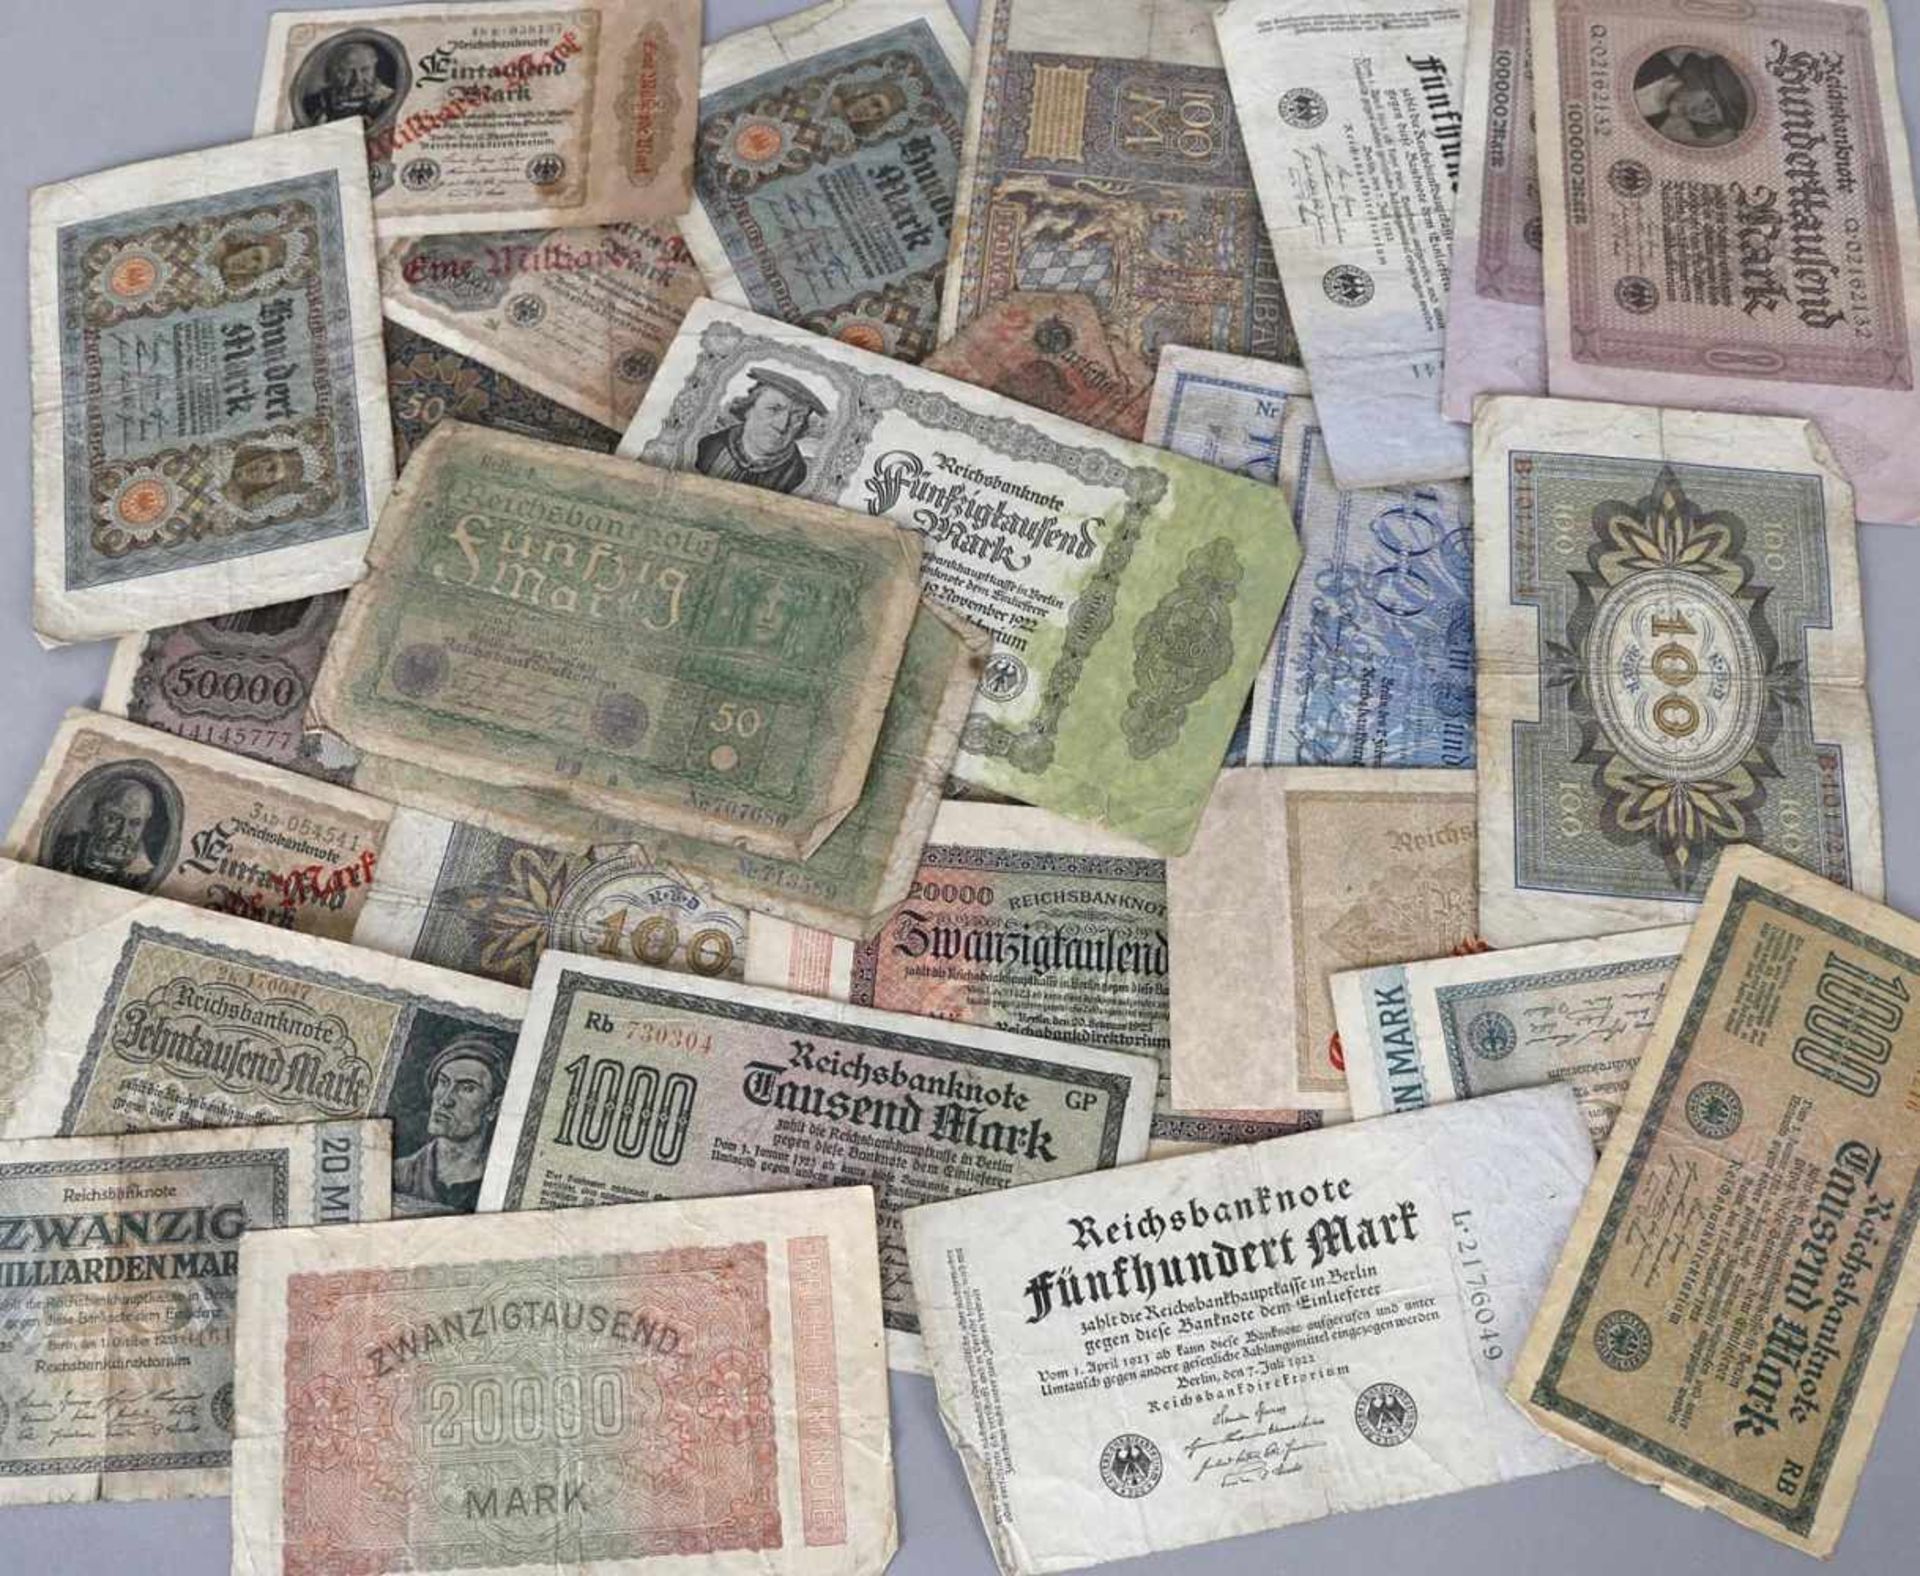 Inflationsgeld, 29 Reichsbanknoten, um 1922u.a. Geldwertangabe von 2 Mark bis zu hunderttausend